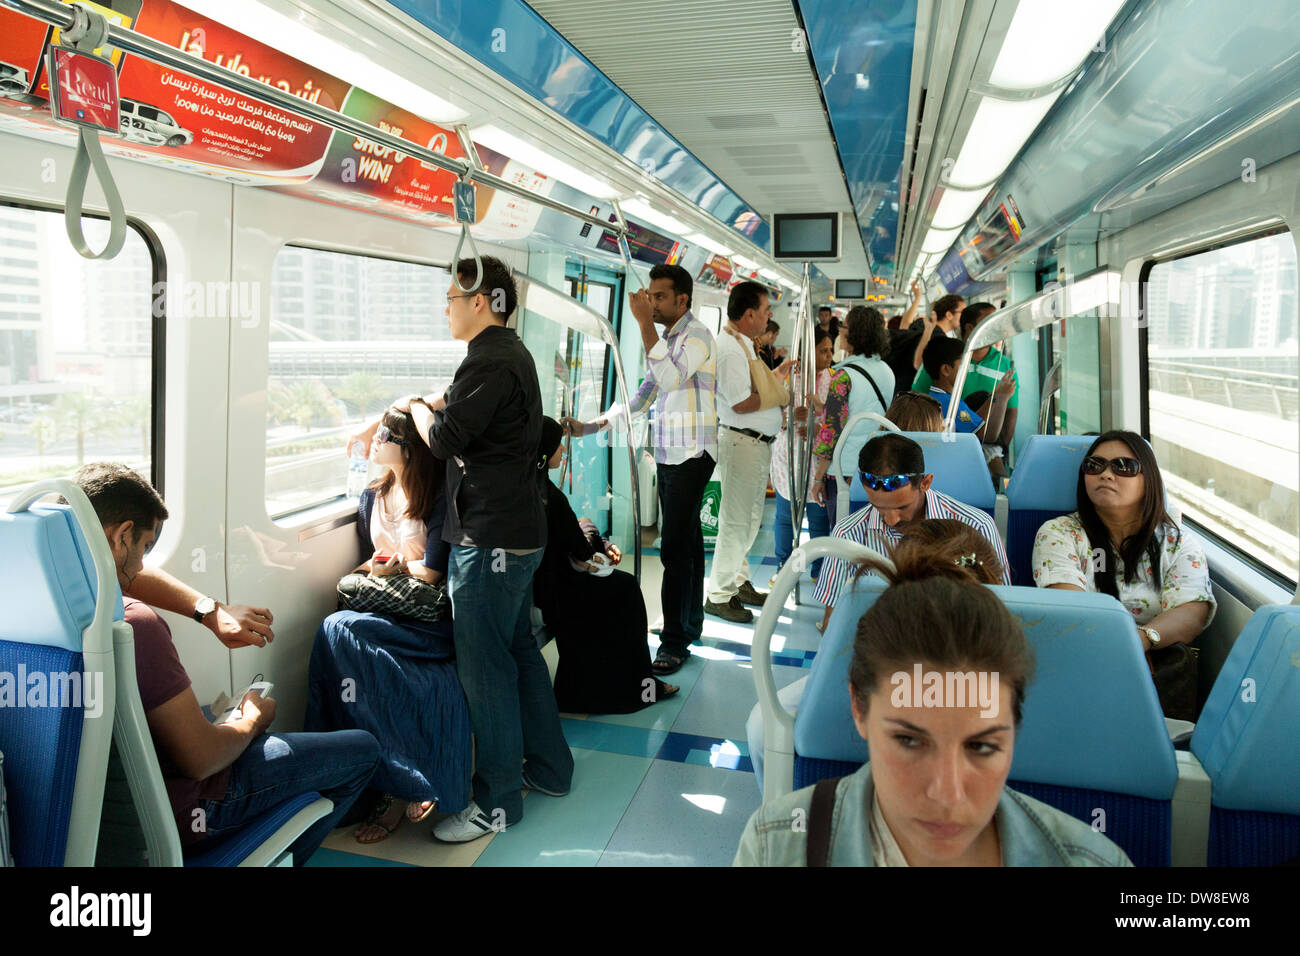 Passagiere in einem Zug Wagen, Transportsystem die Dubai Metro-Öffentlichkeit, Dubai, Vereinigte Arabische Emirate, Vereinigte Arabische Emirate Naher Osten Stockfoto